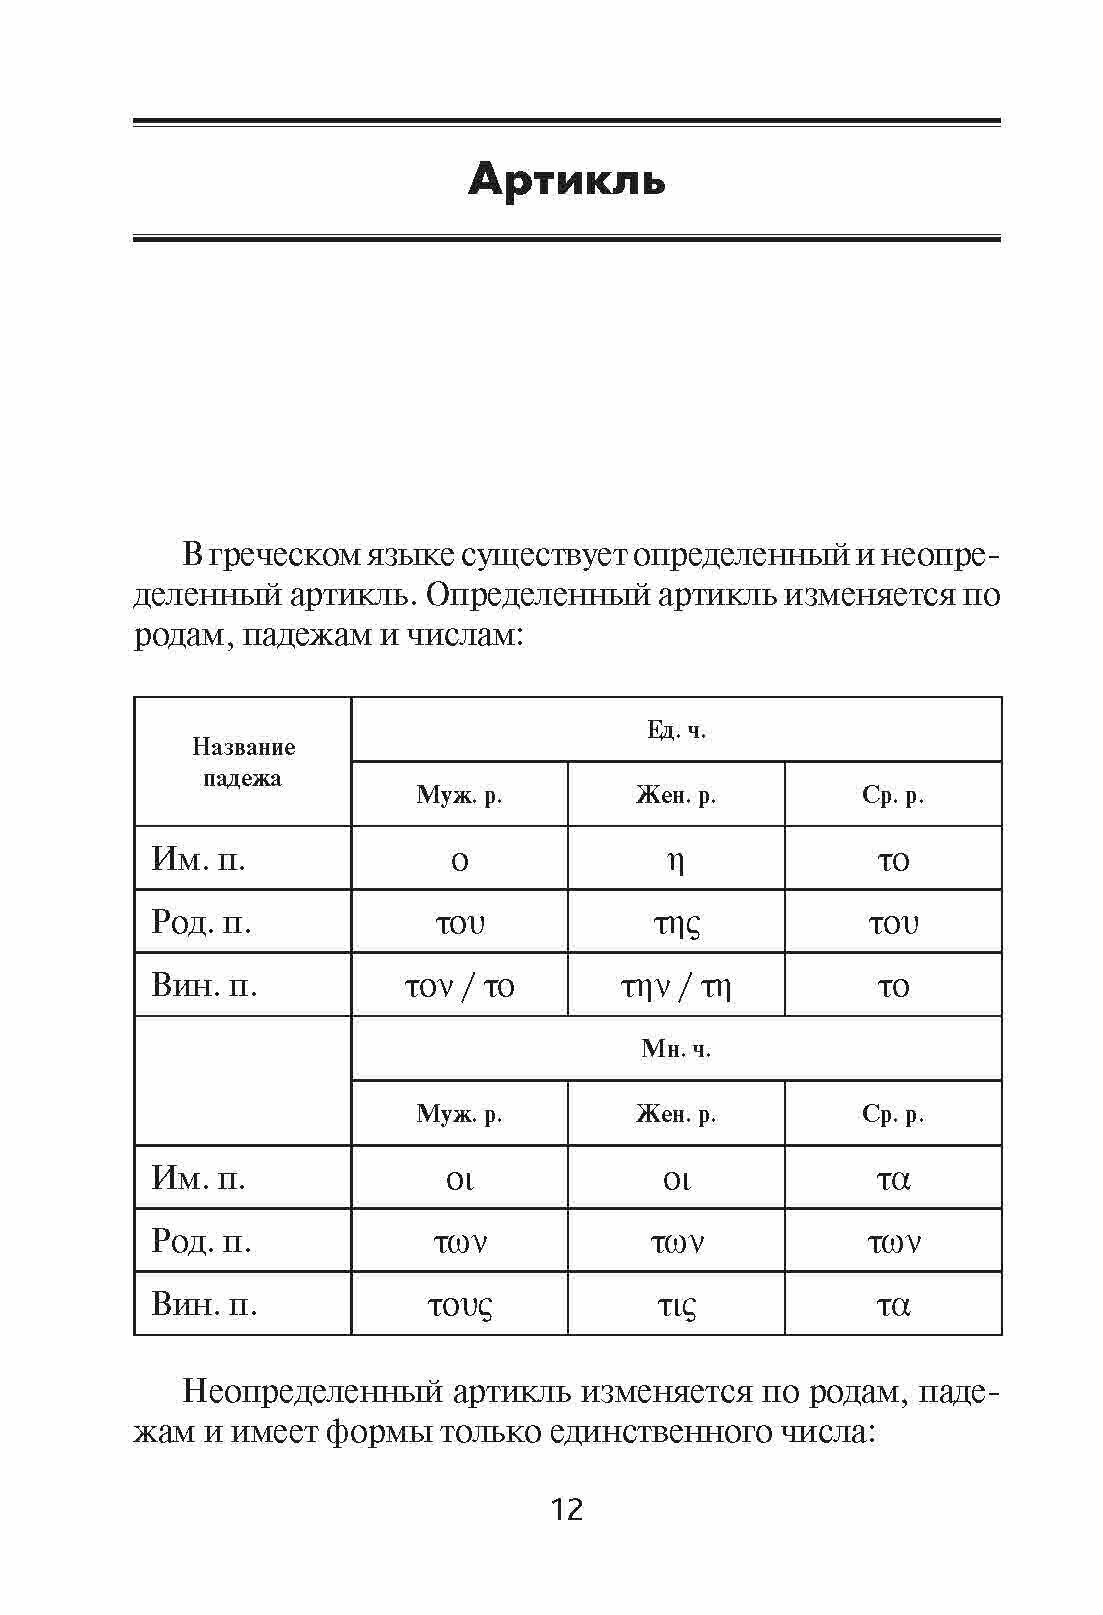 Греческая грамматика в таблицах и схемах - фото №12